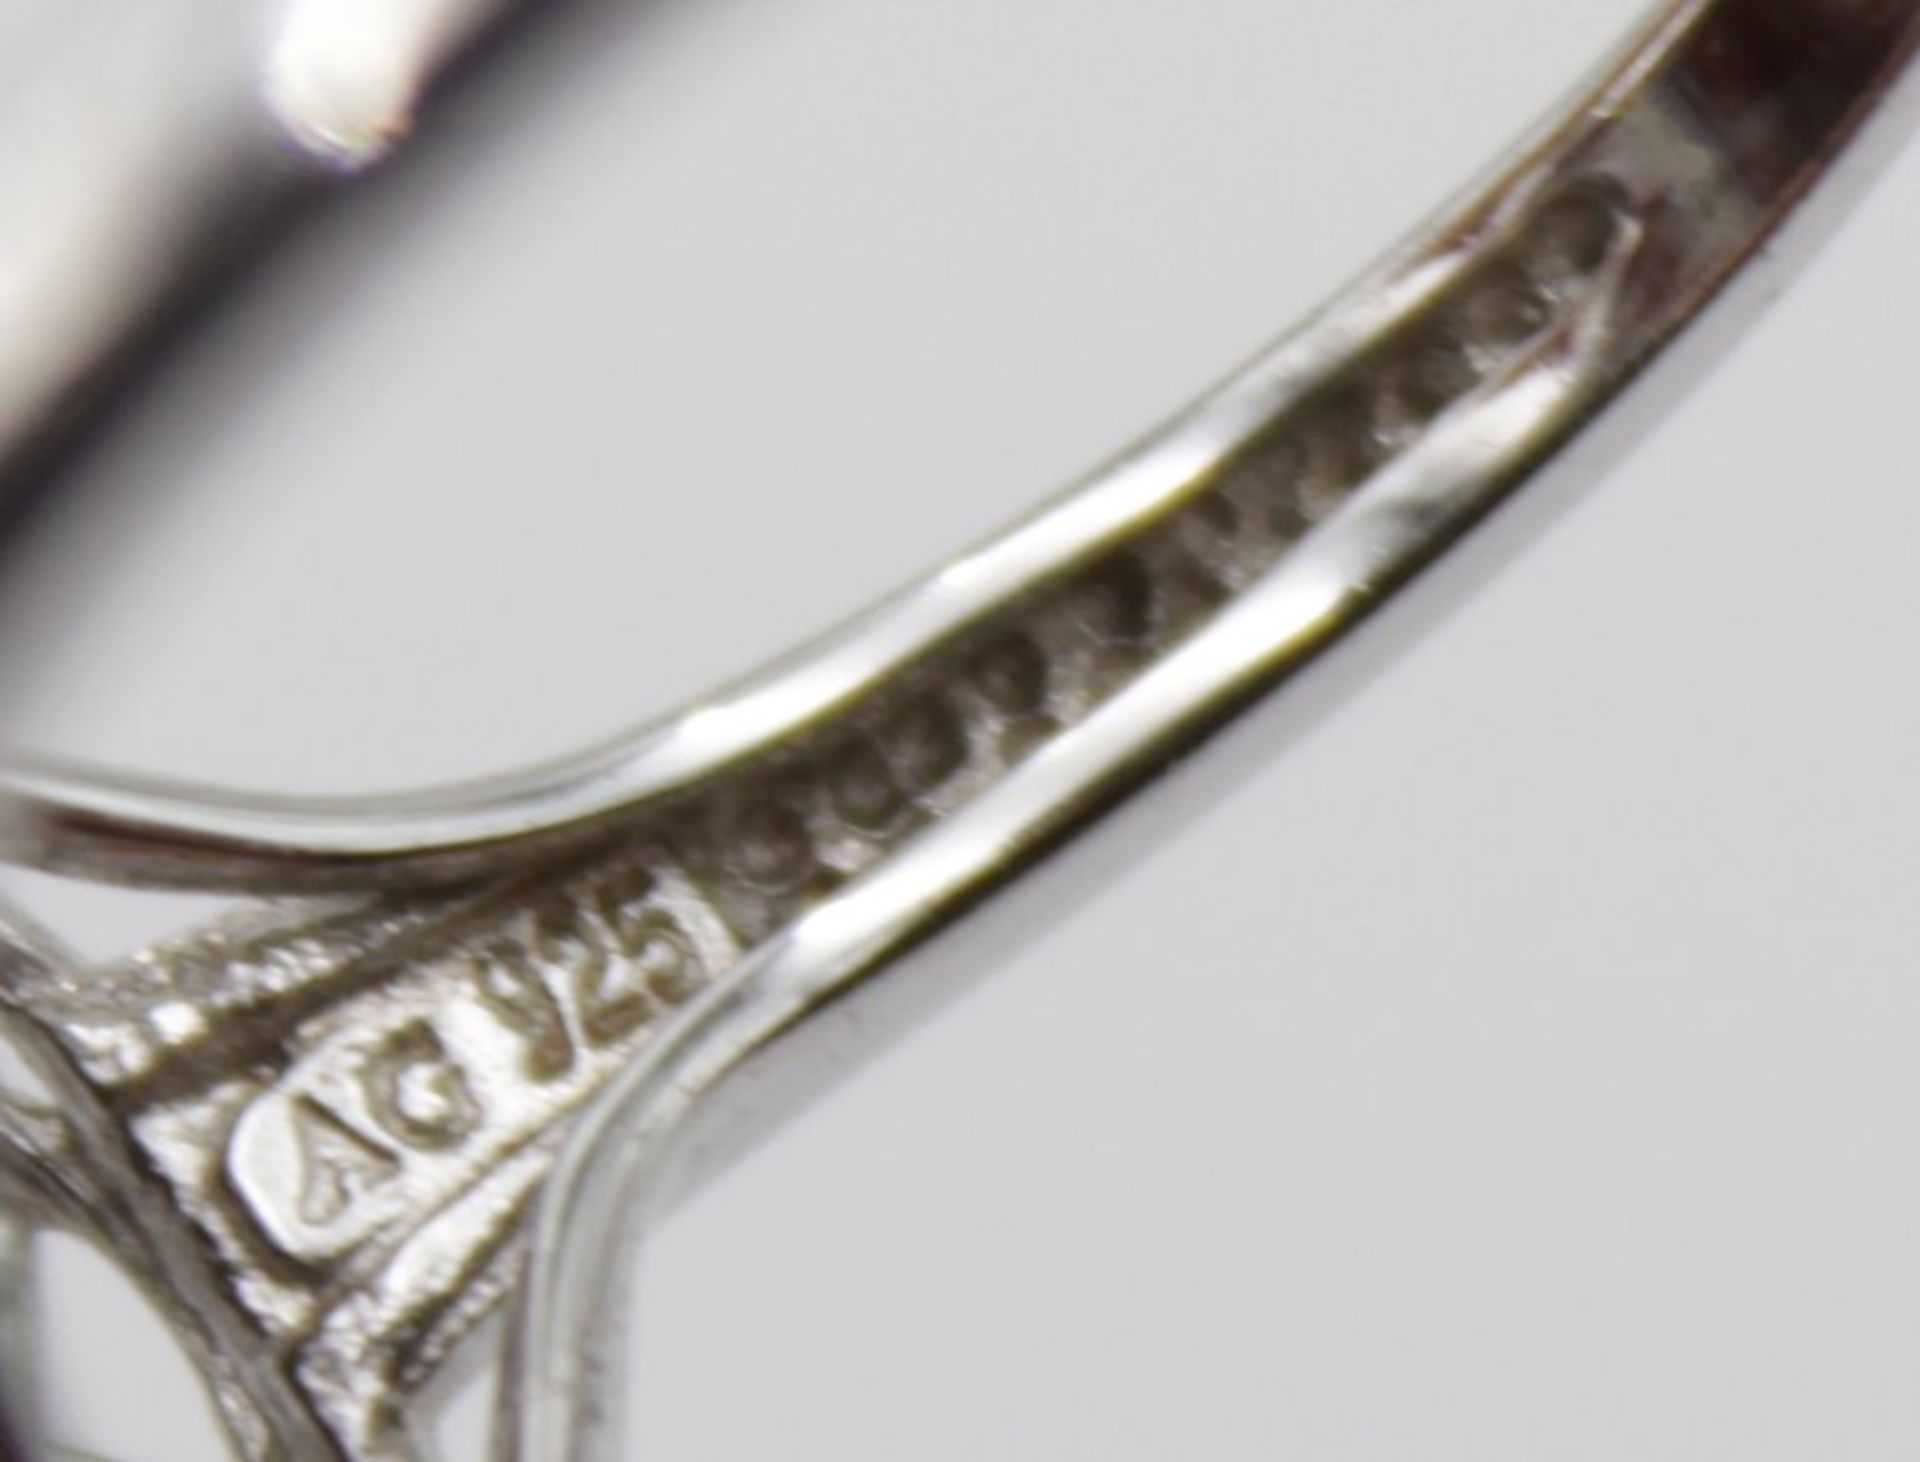 925er Silber-Ring, facc. brauner Stein, ca. 6,5gr.m, RG 59 - Bild 5 aus 5